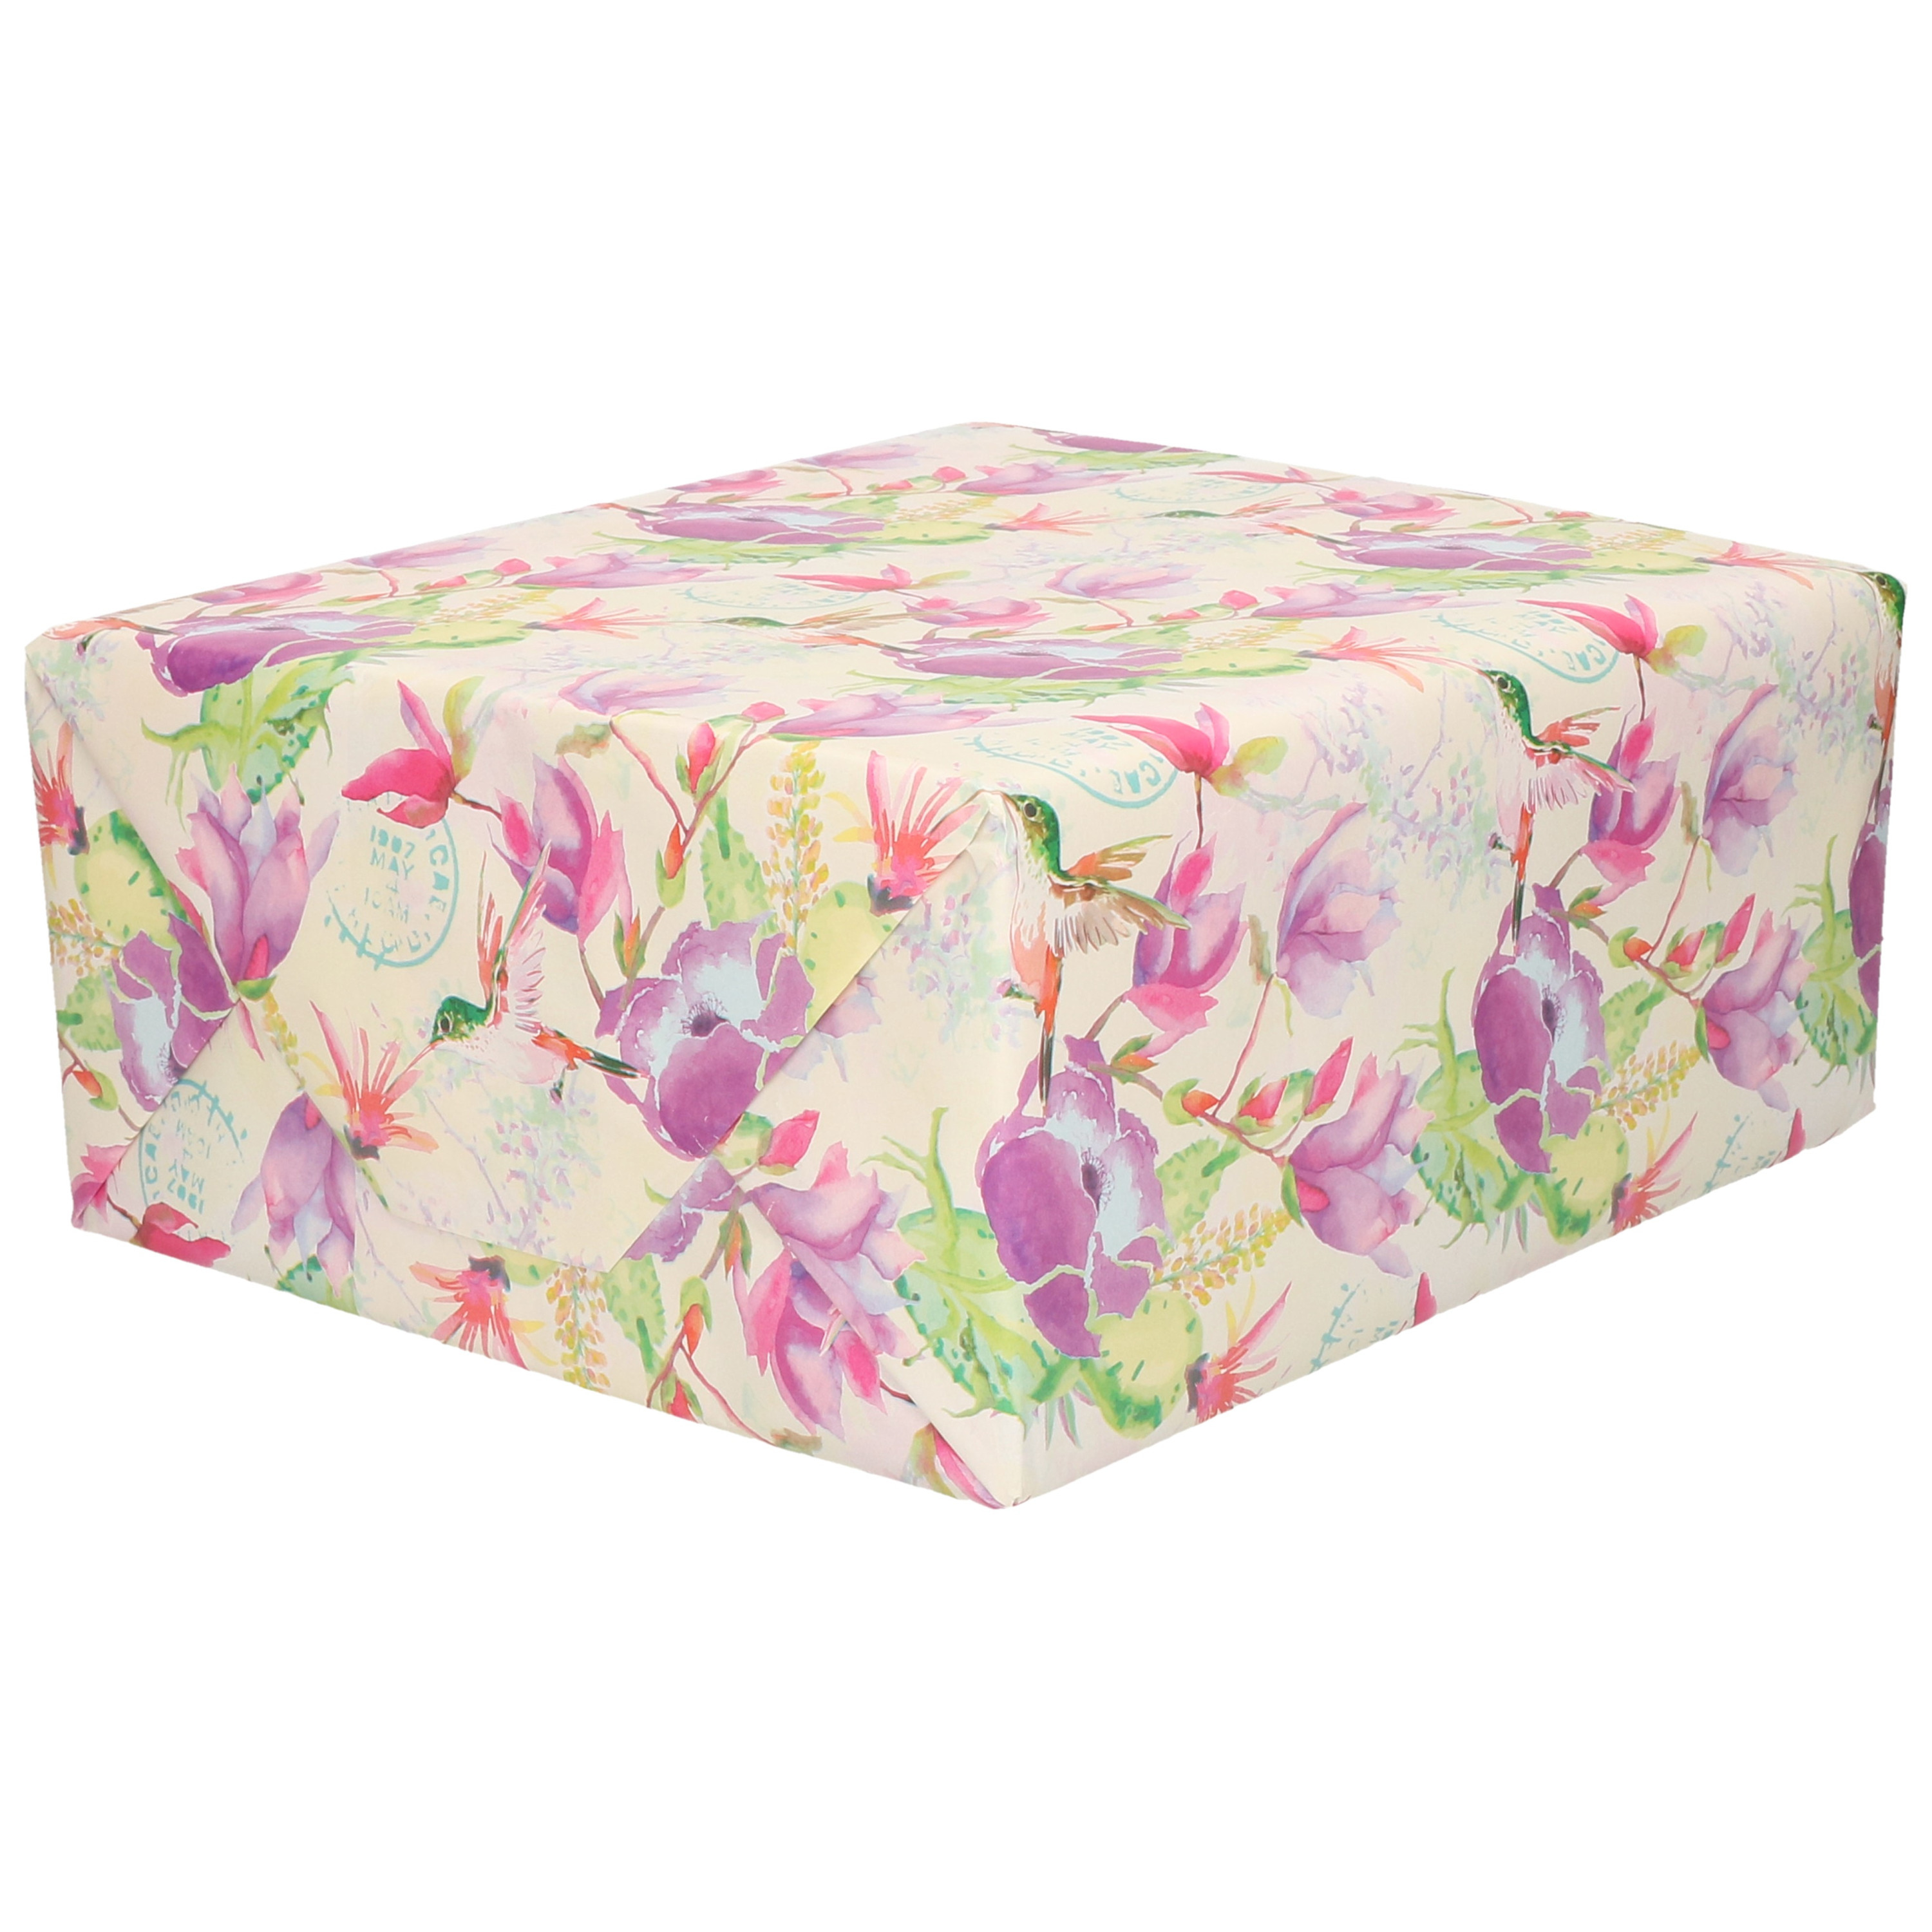 1x Inpakpapier/cadeaupapier creme met paarse bloemen en vogels motief 200 x 70 cm rol